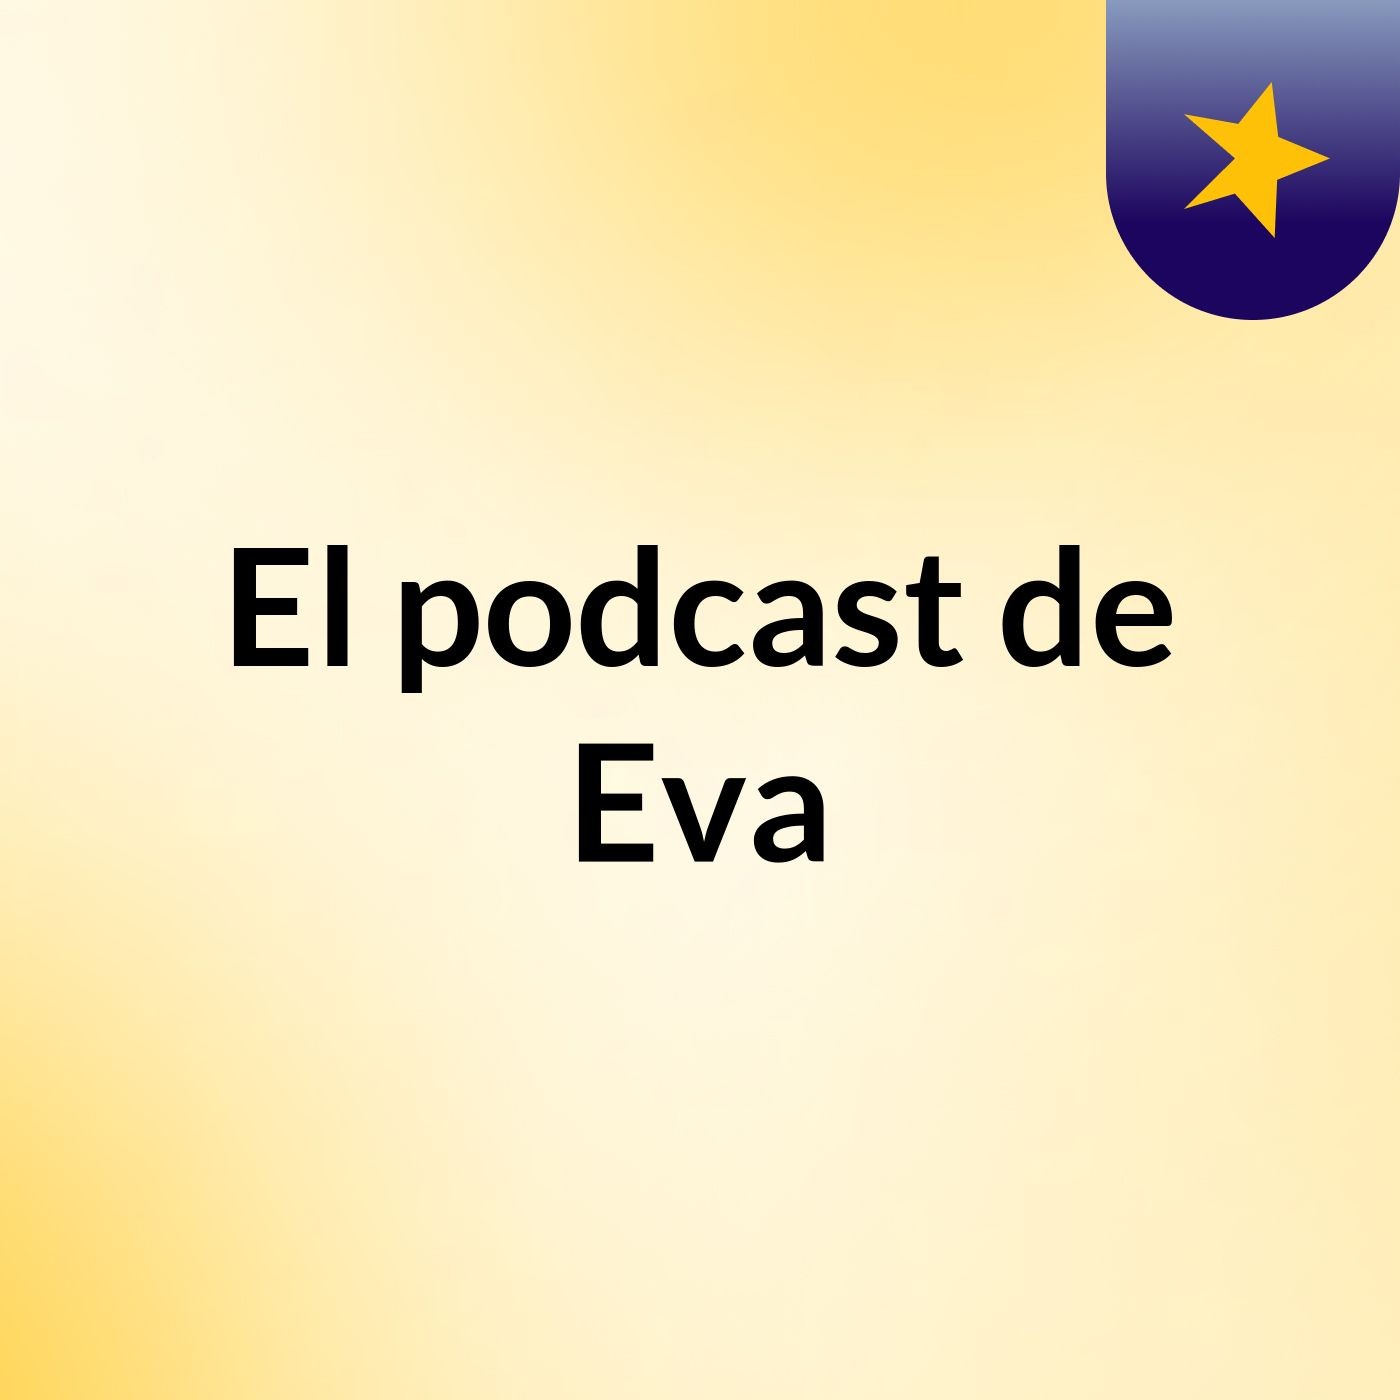 El podcast de Eva